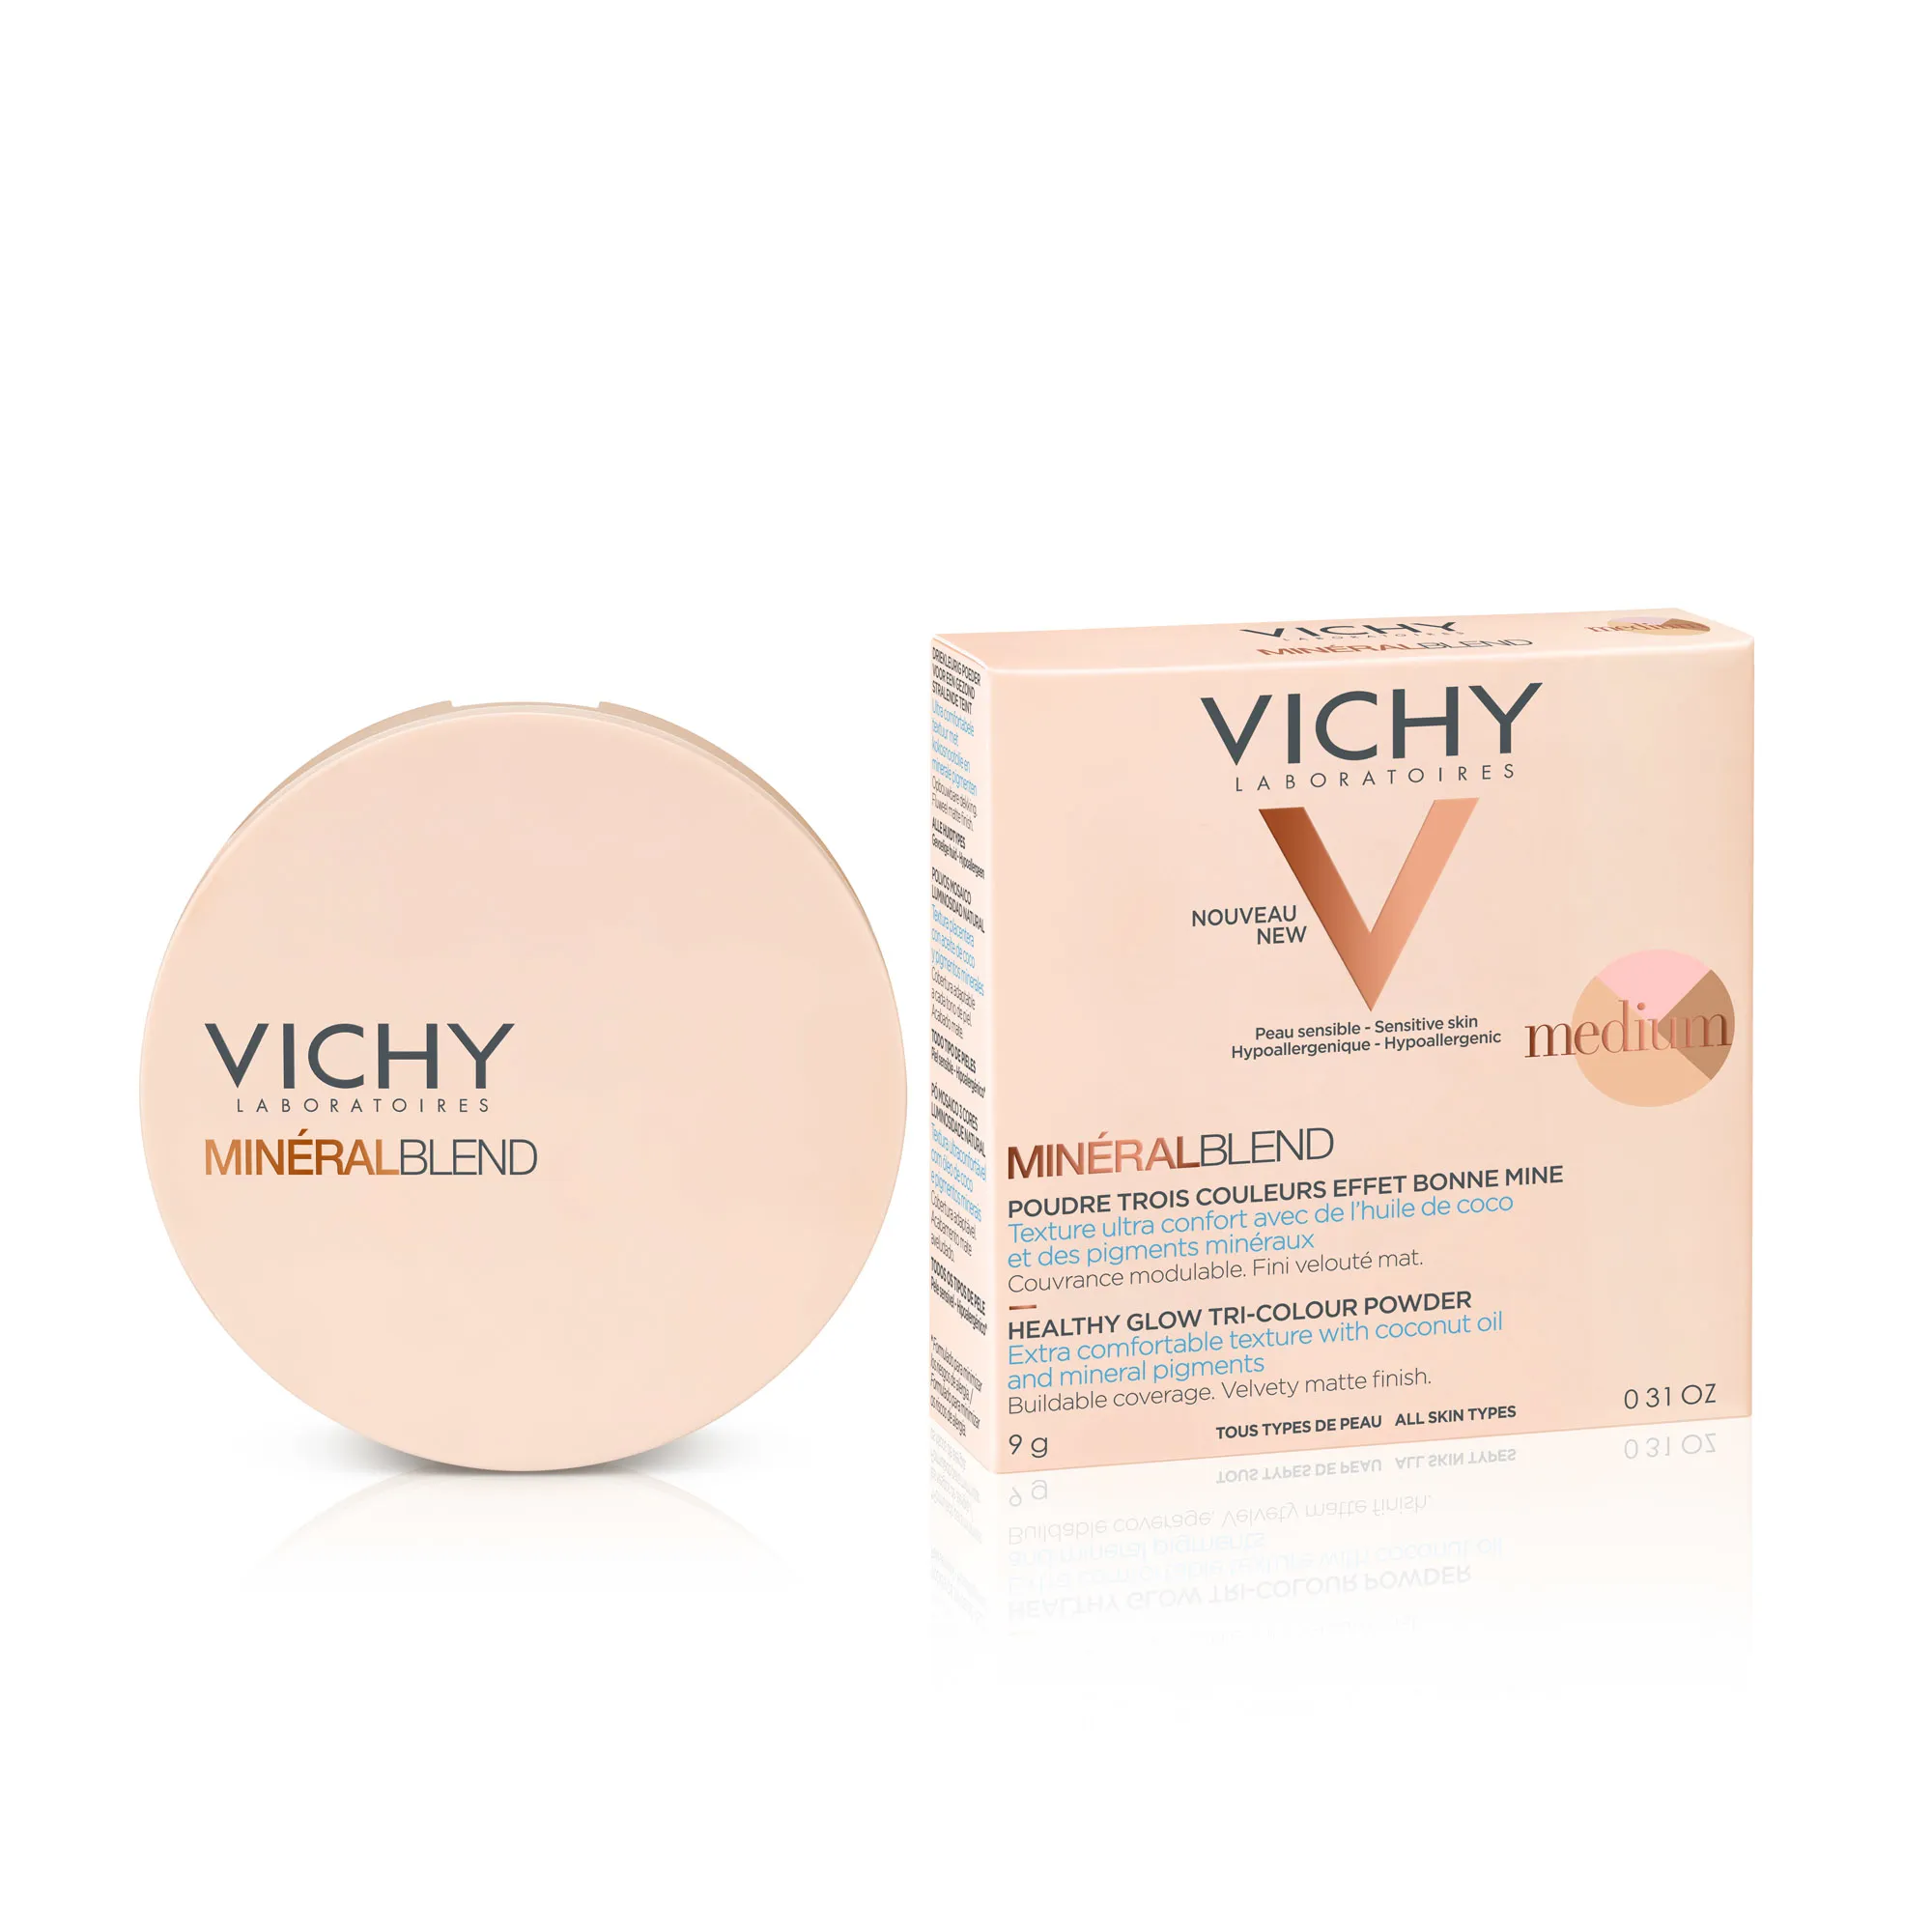 Vichy Mineralblend, puder mozaikowy w kompakcie trójkolorowy, medium, 9 g 